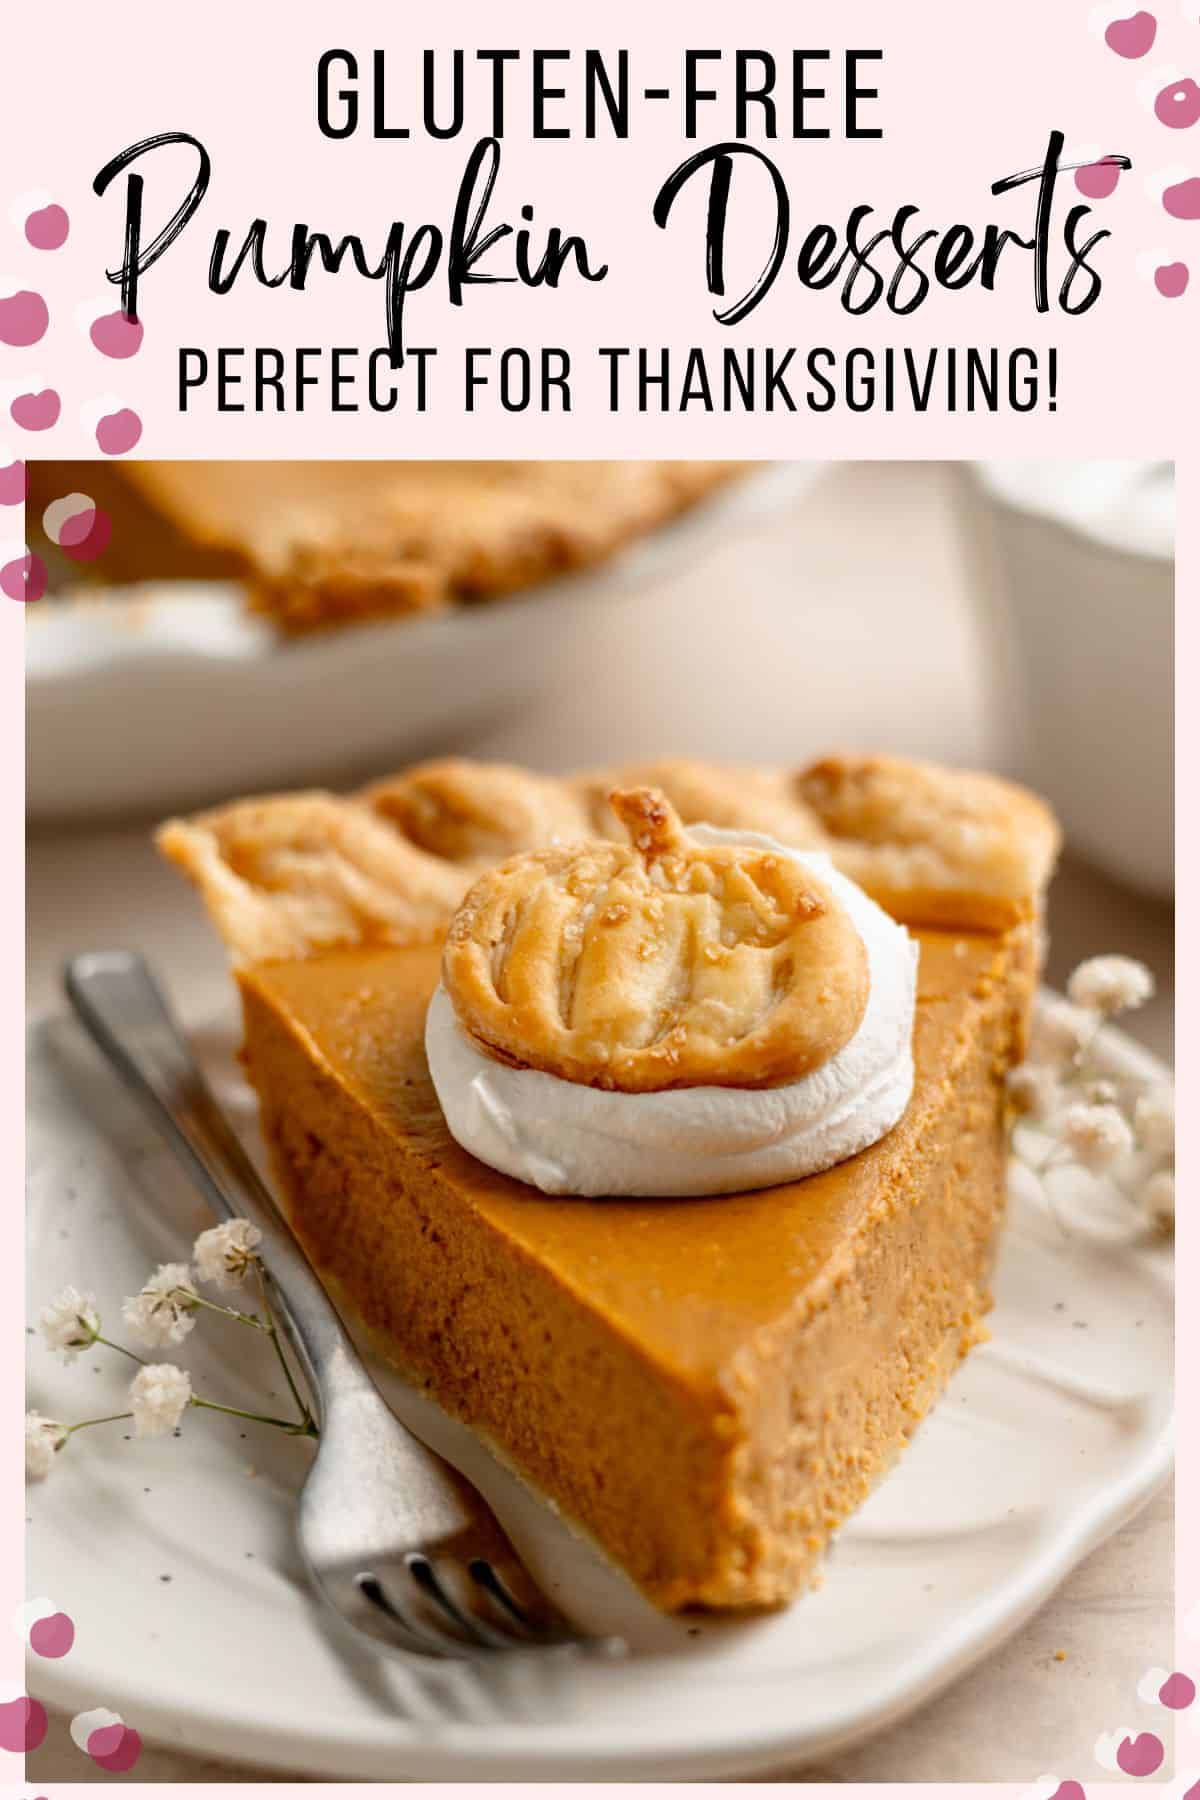 Gluten free pumpkin pie slice with text overlay; gluten free pumpkin desserts perfect for thanksgiving.